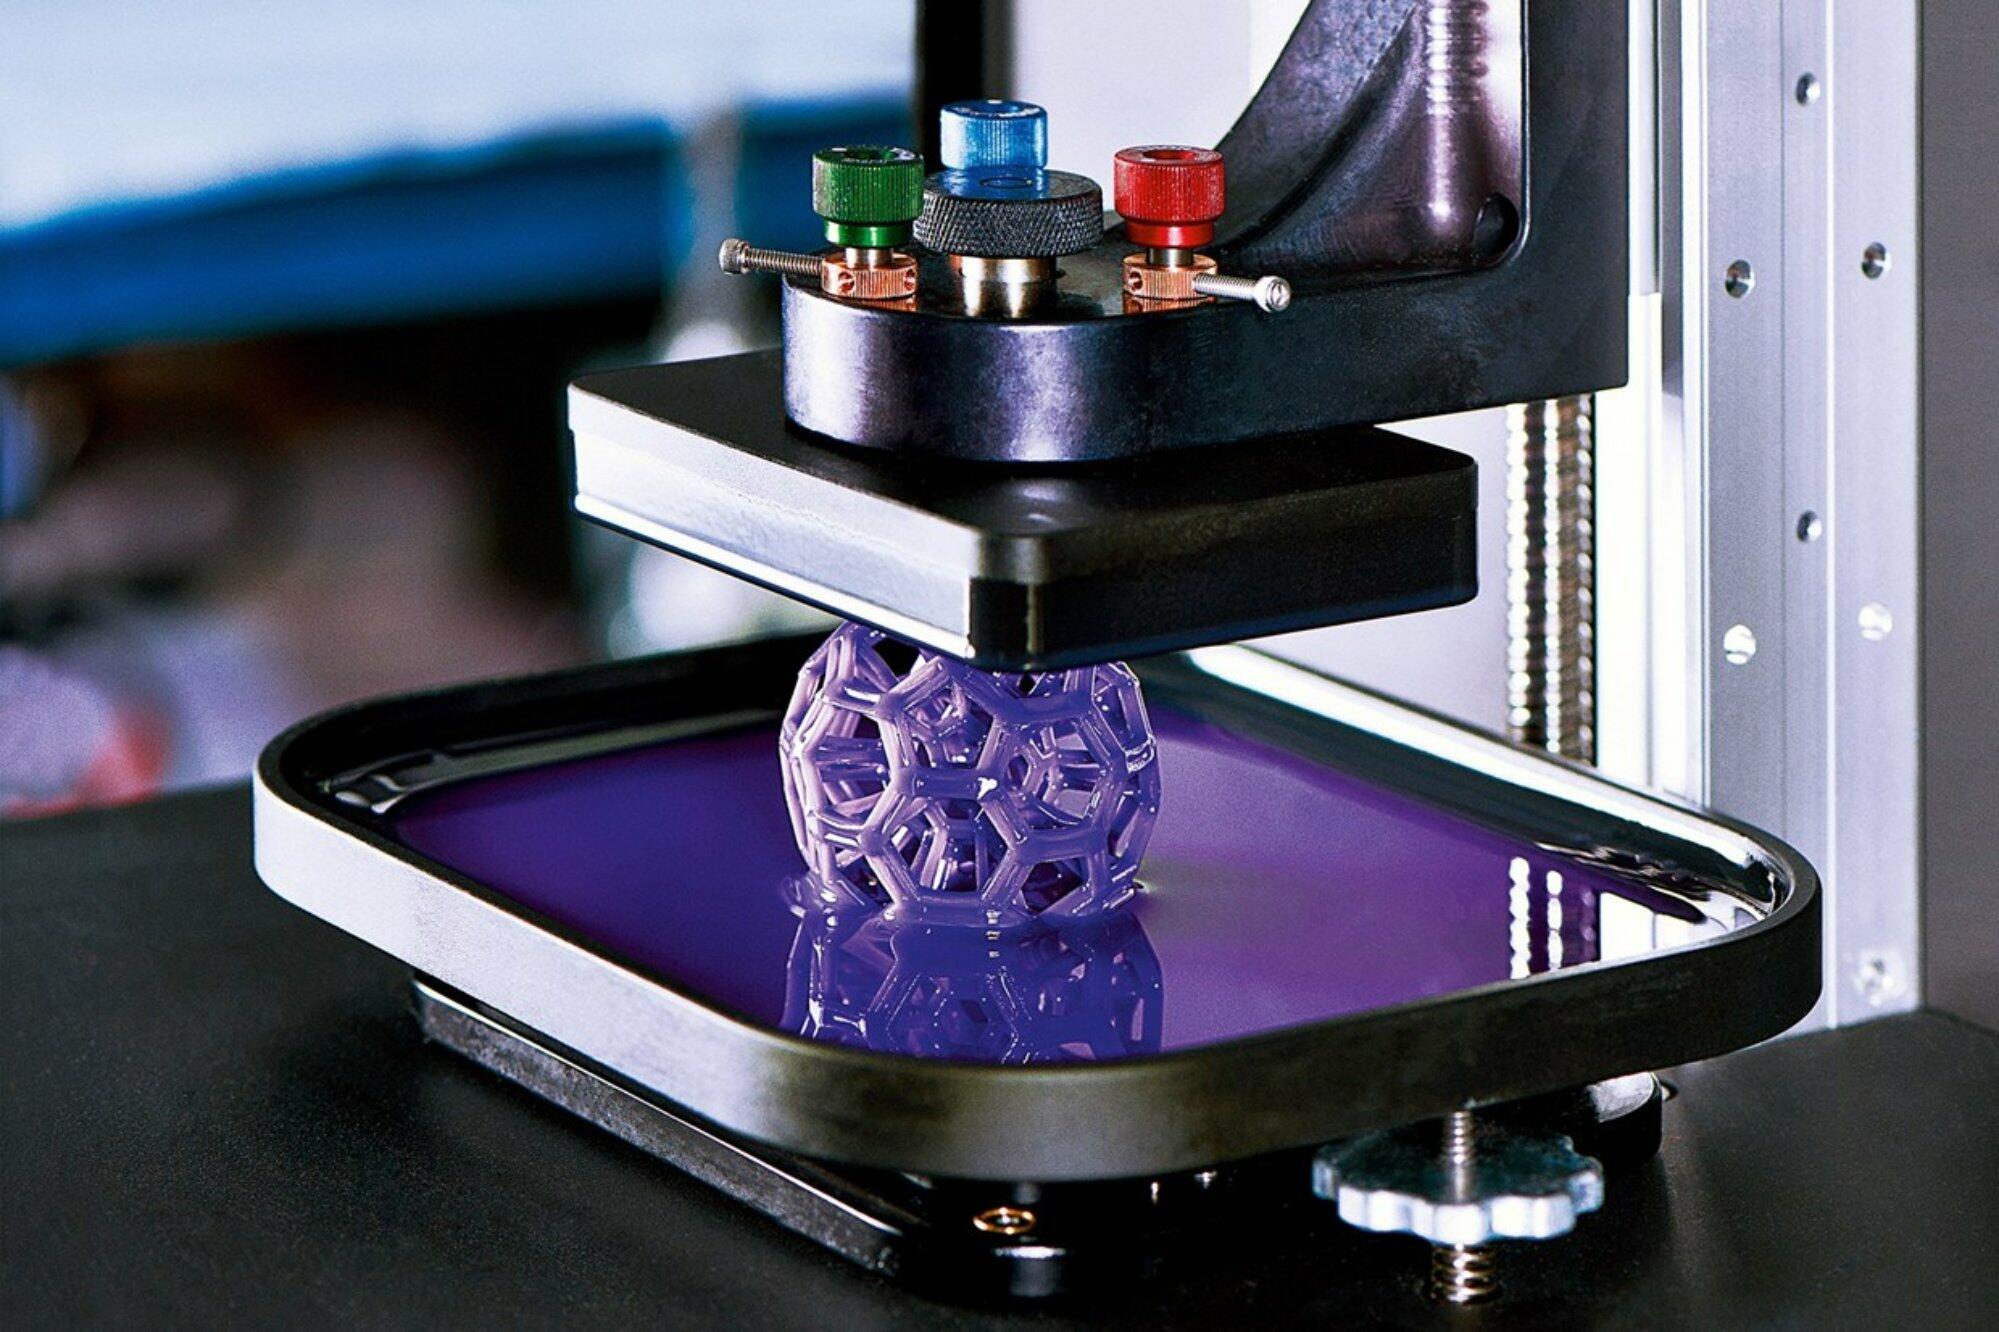 Maggiori informazioni su "Stampa 3D a resina: tutto quello che devi sapere"